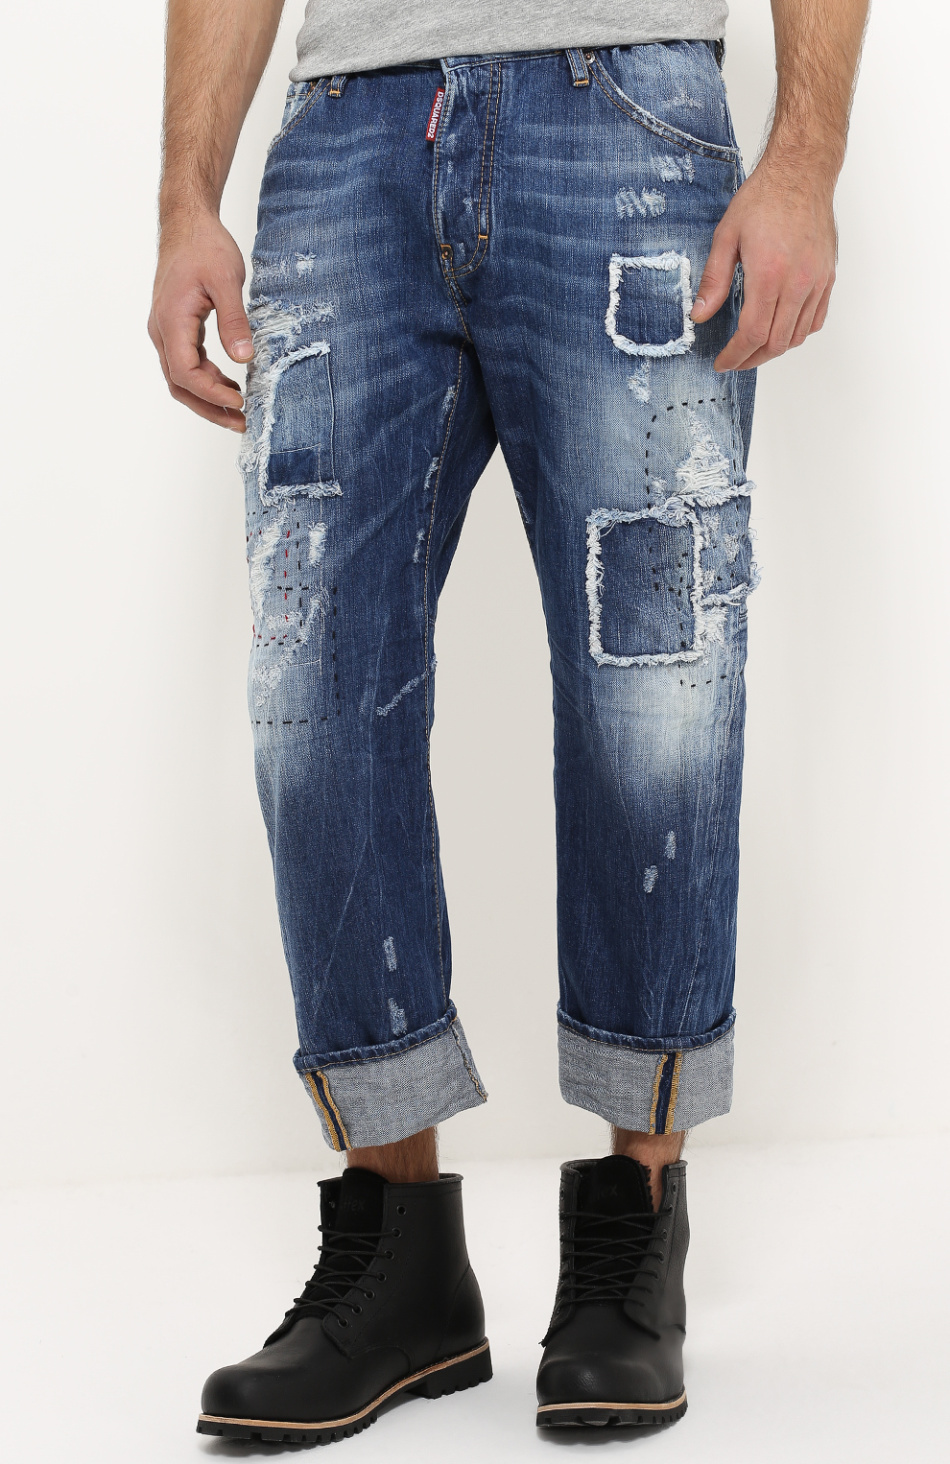 Заплатка на джинсы